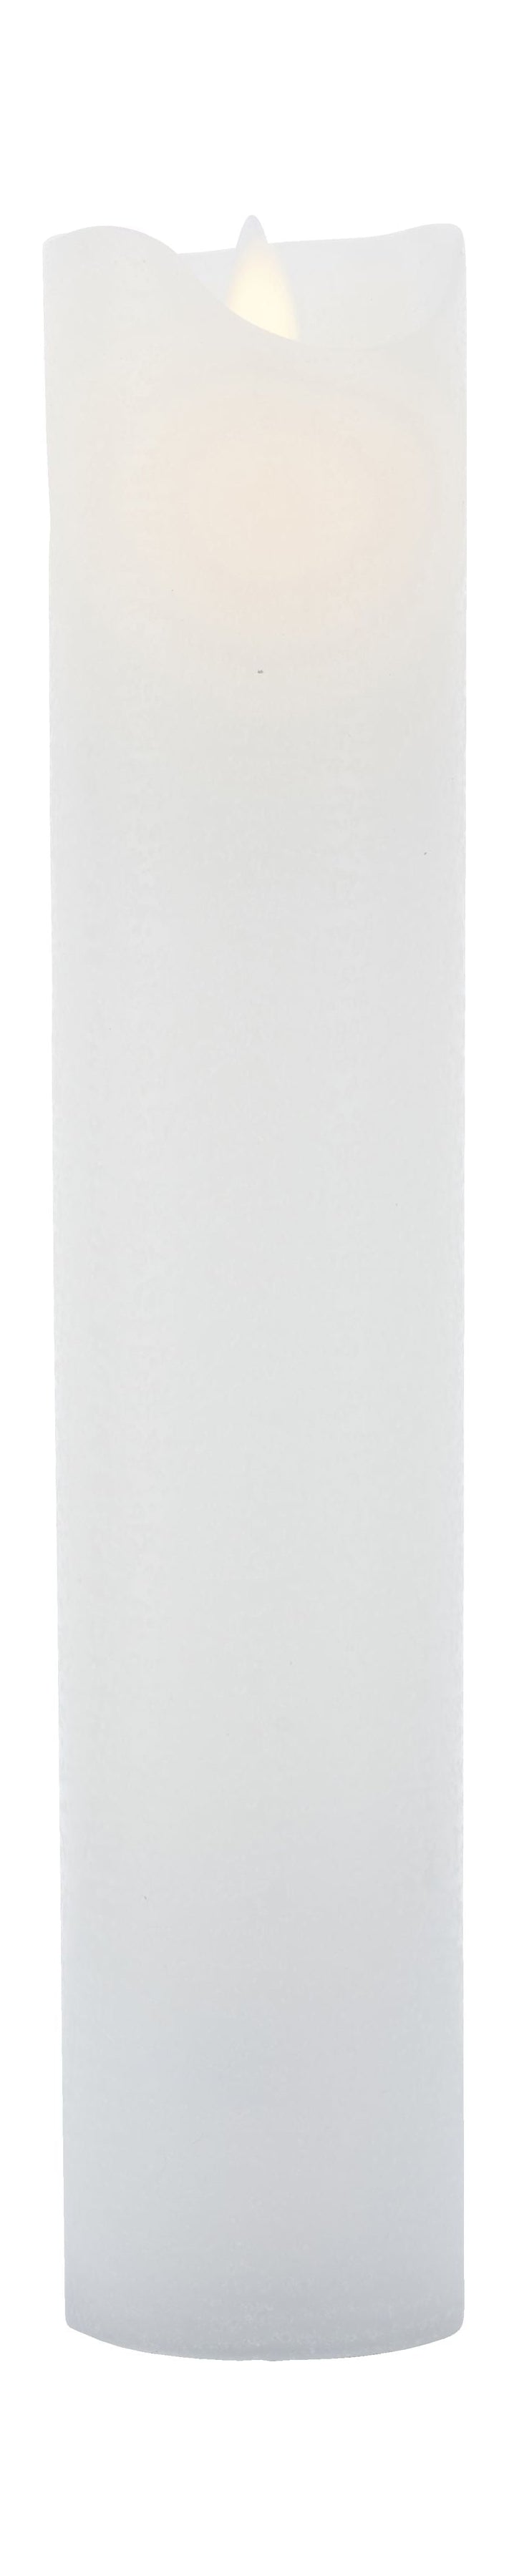 Sirius Sara recargable Vela LED blanca, Ø7,5x H30cm